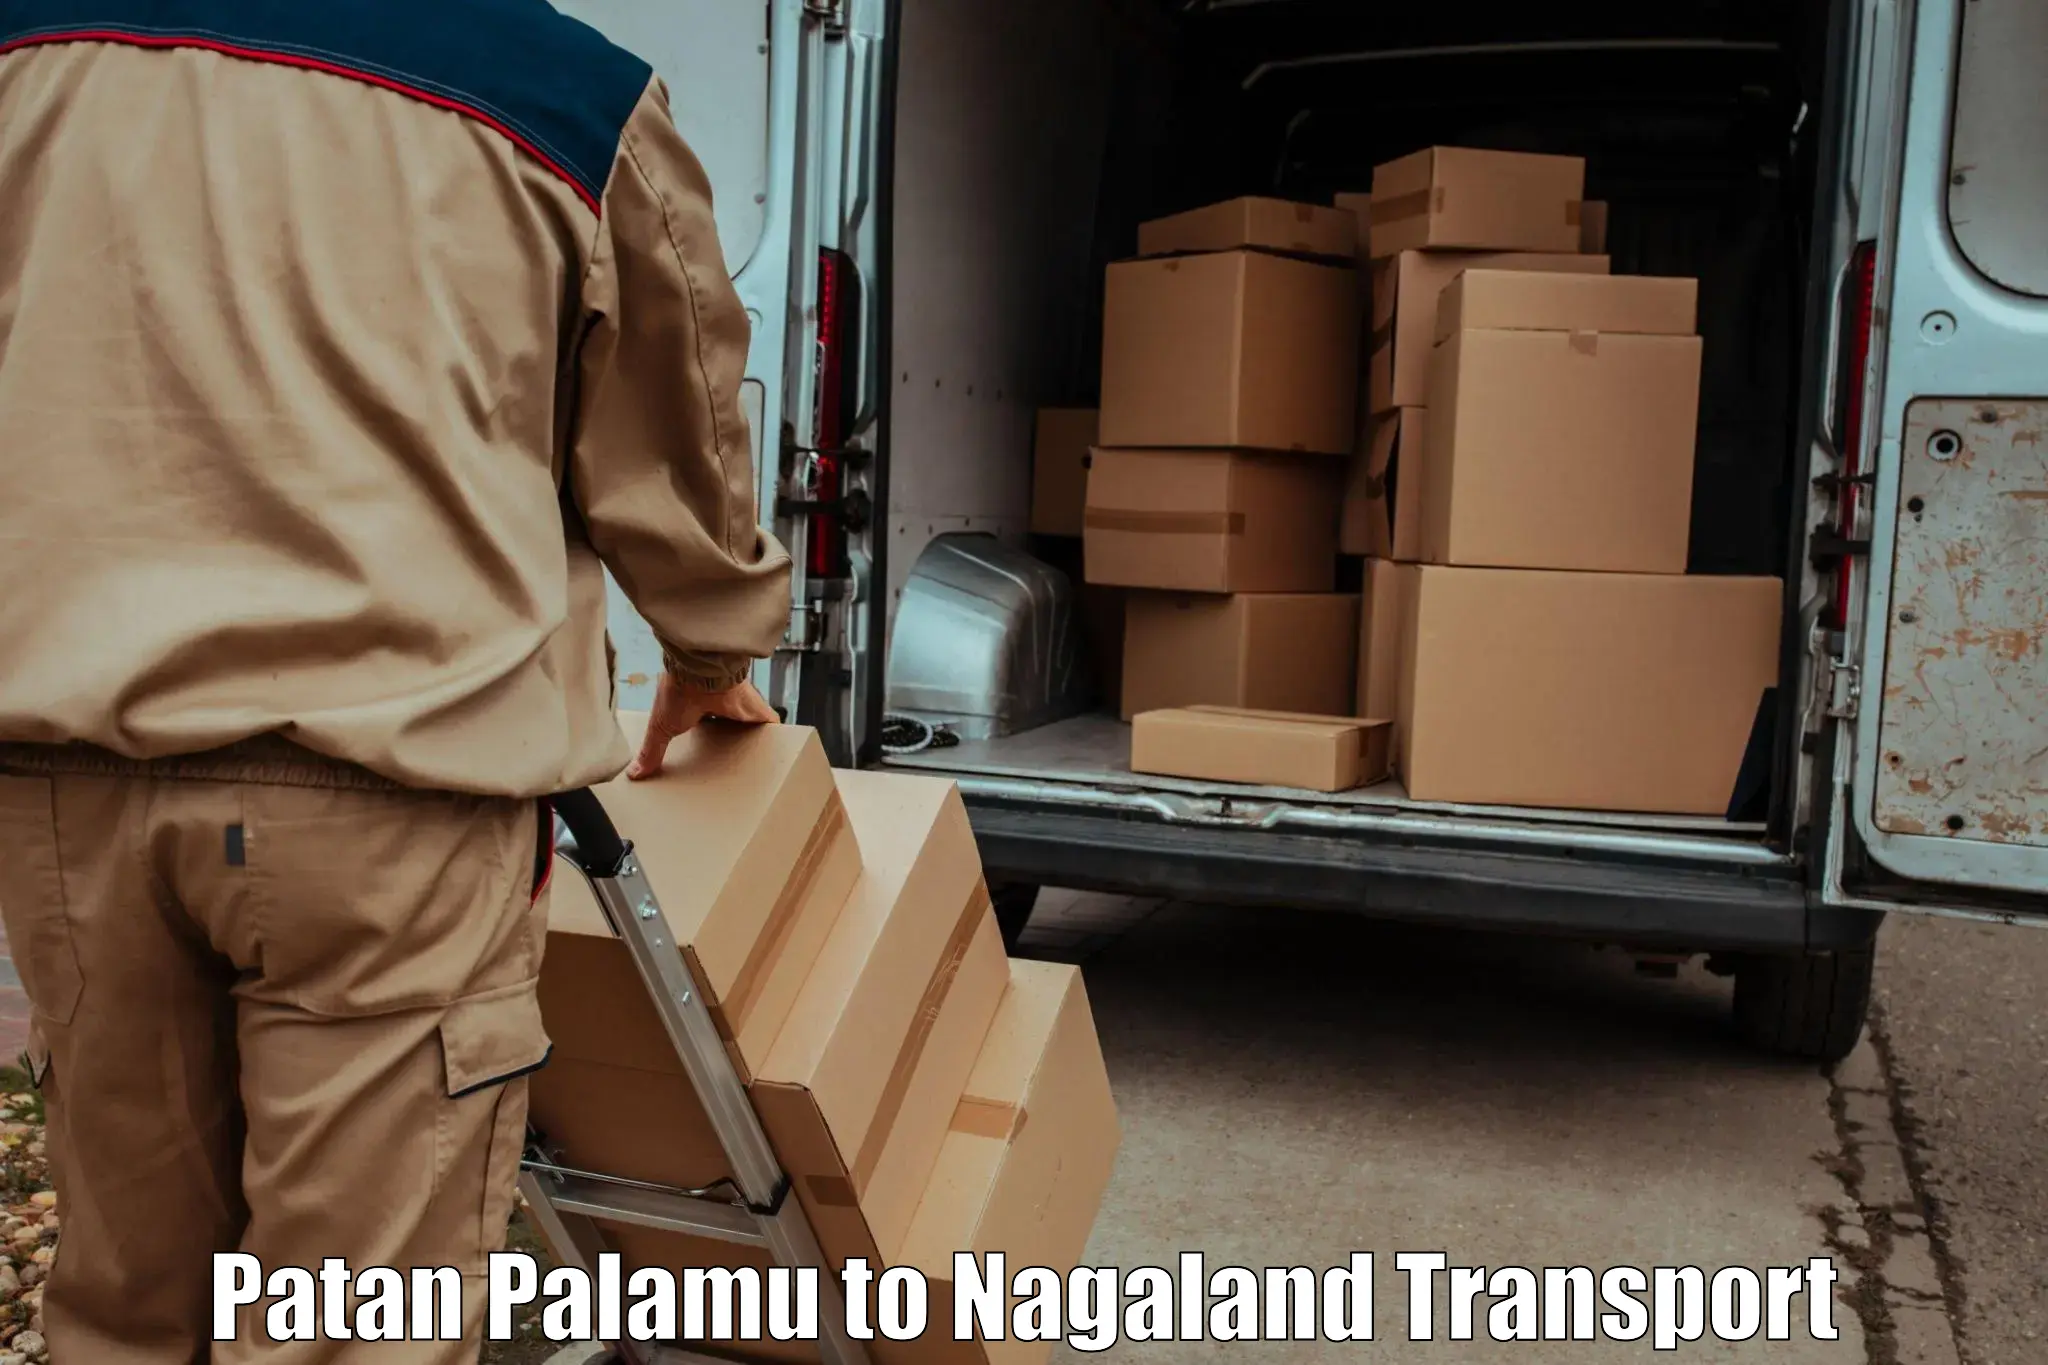 Delivery service Patan Palamu to NIT Nagaland